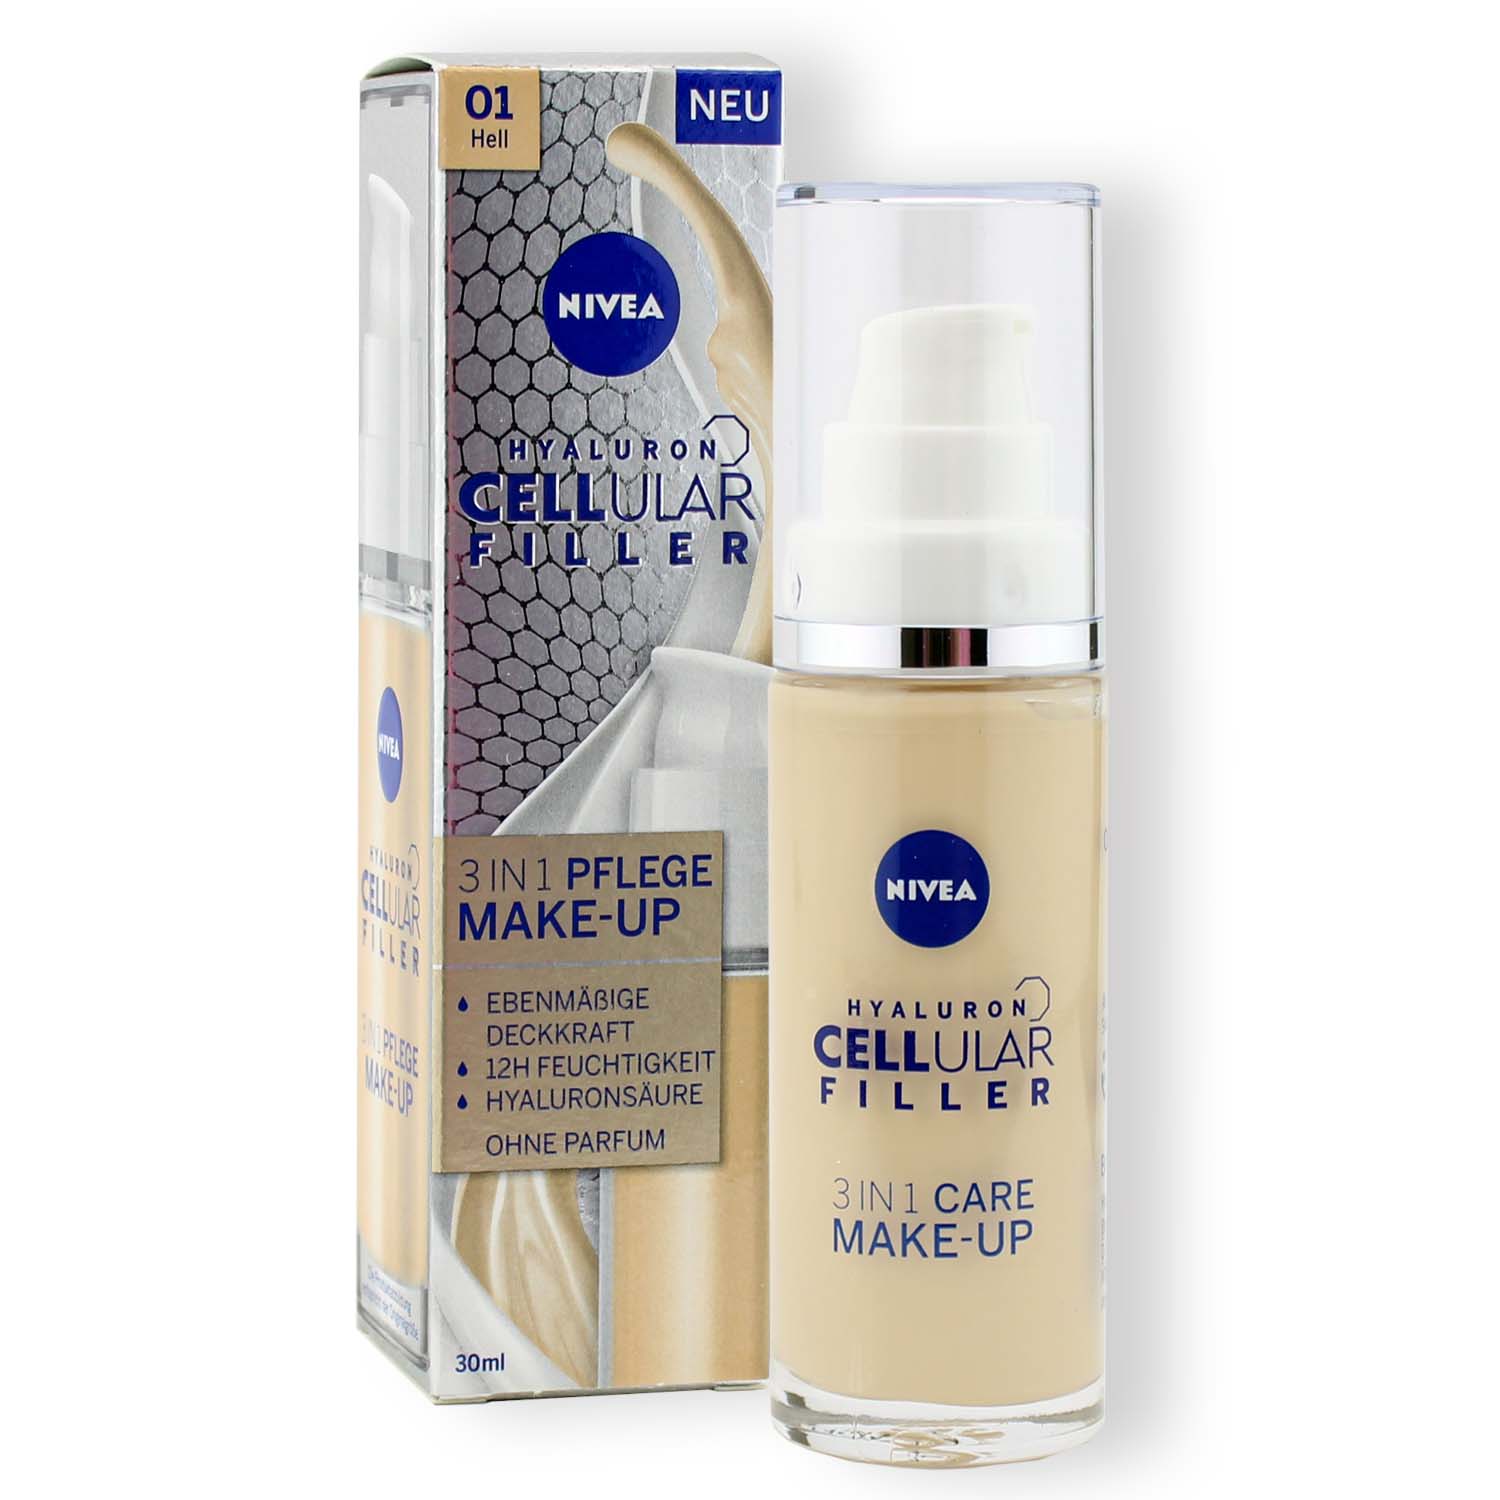 Nivea Hyaluron Cellular Filler 3in1 Pflege Make-up 01 Hell 30ml